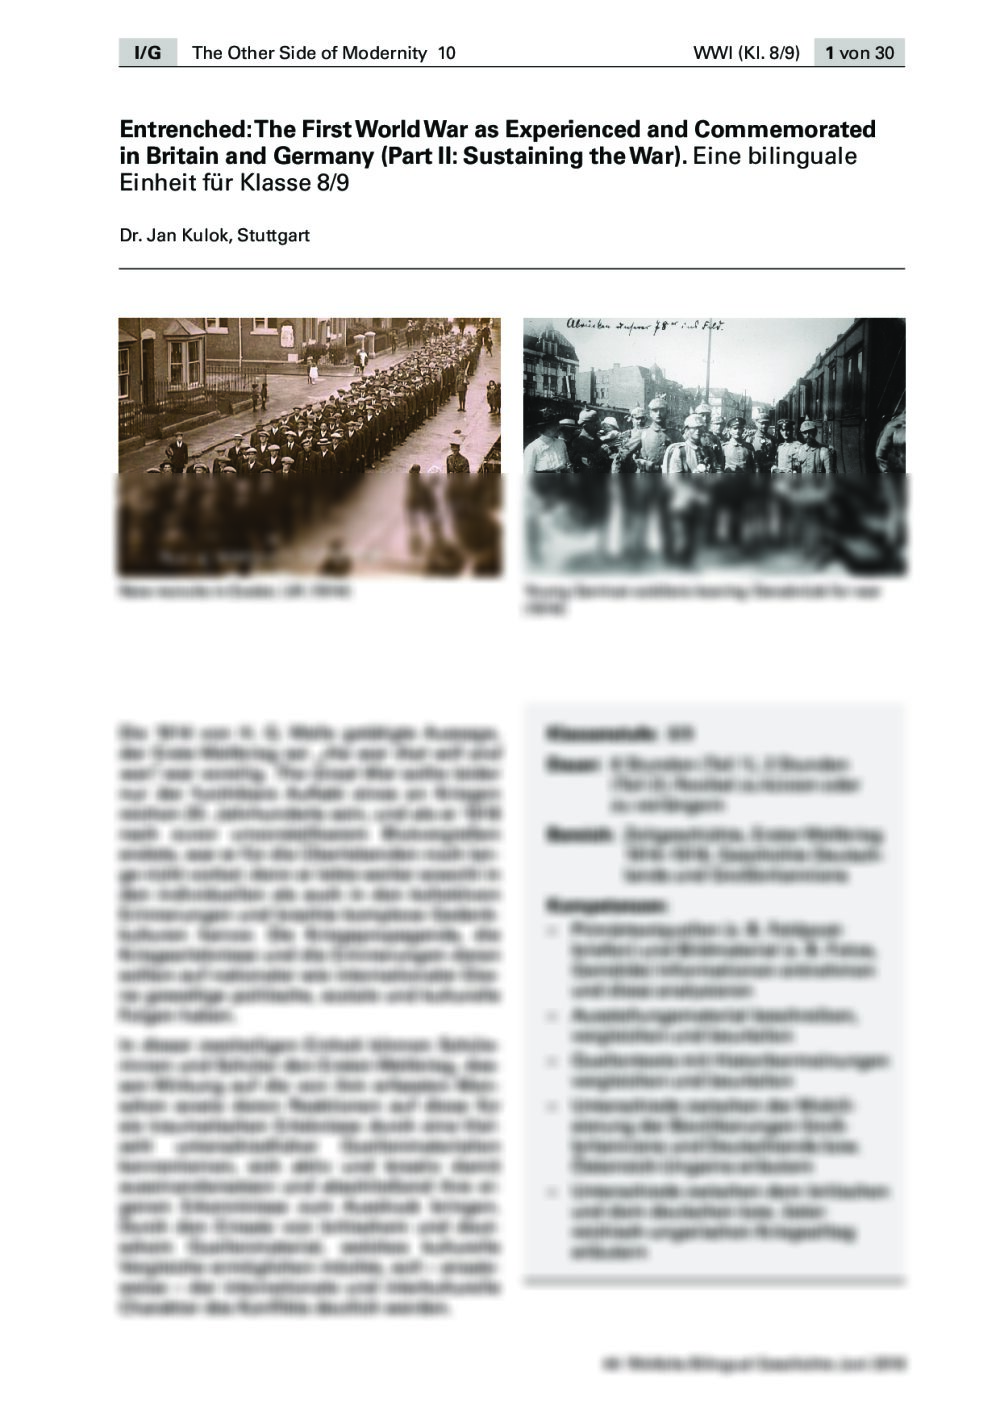 Eine bilinuguale Einheit zum Ersten Weltkrieg - Seite 1